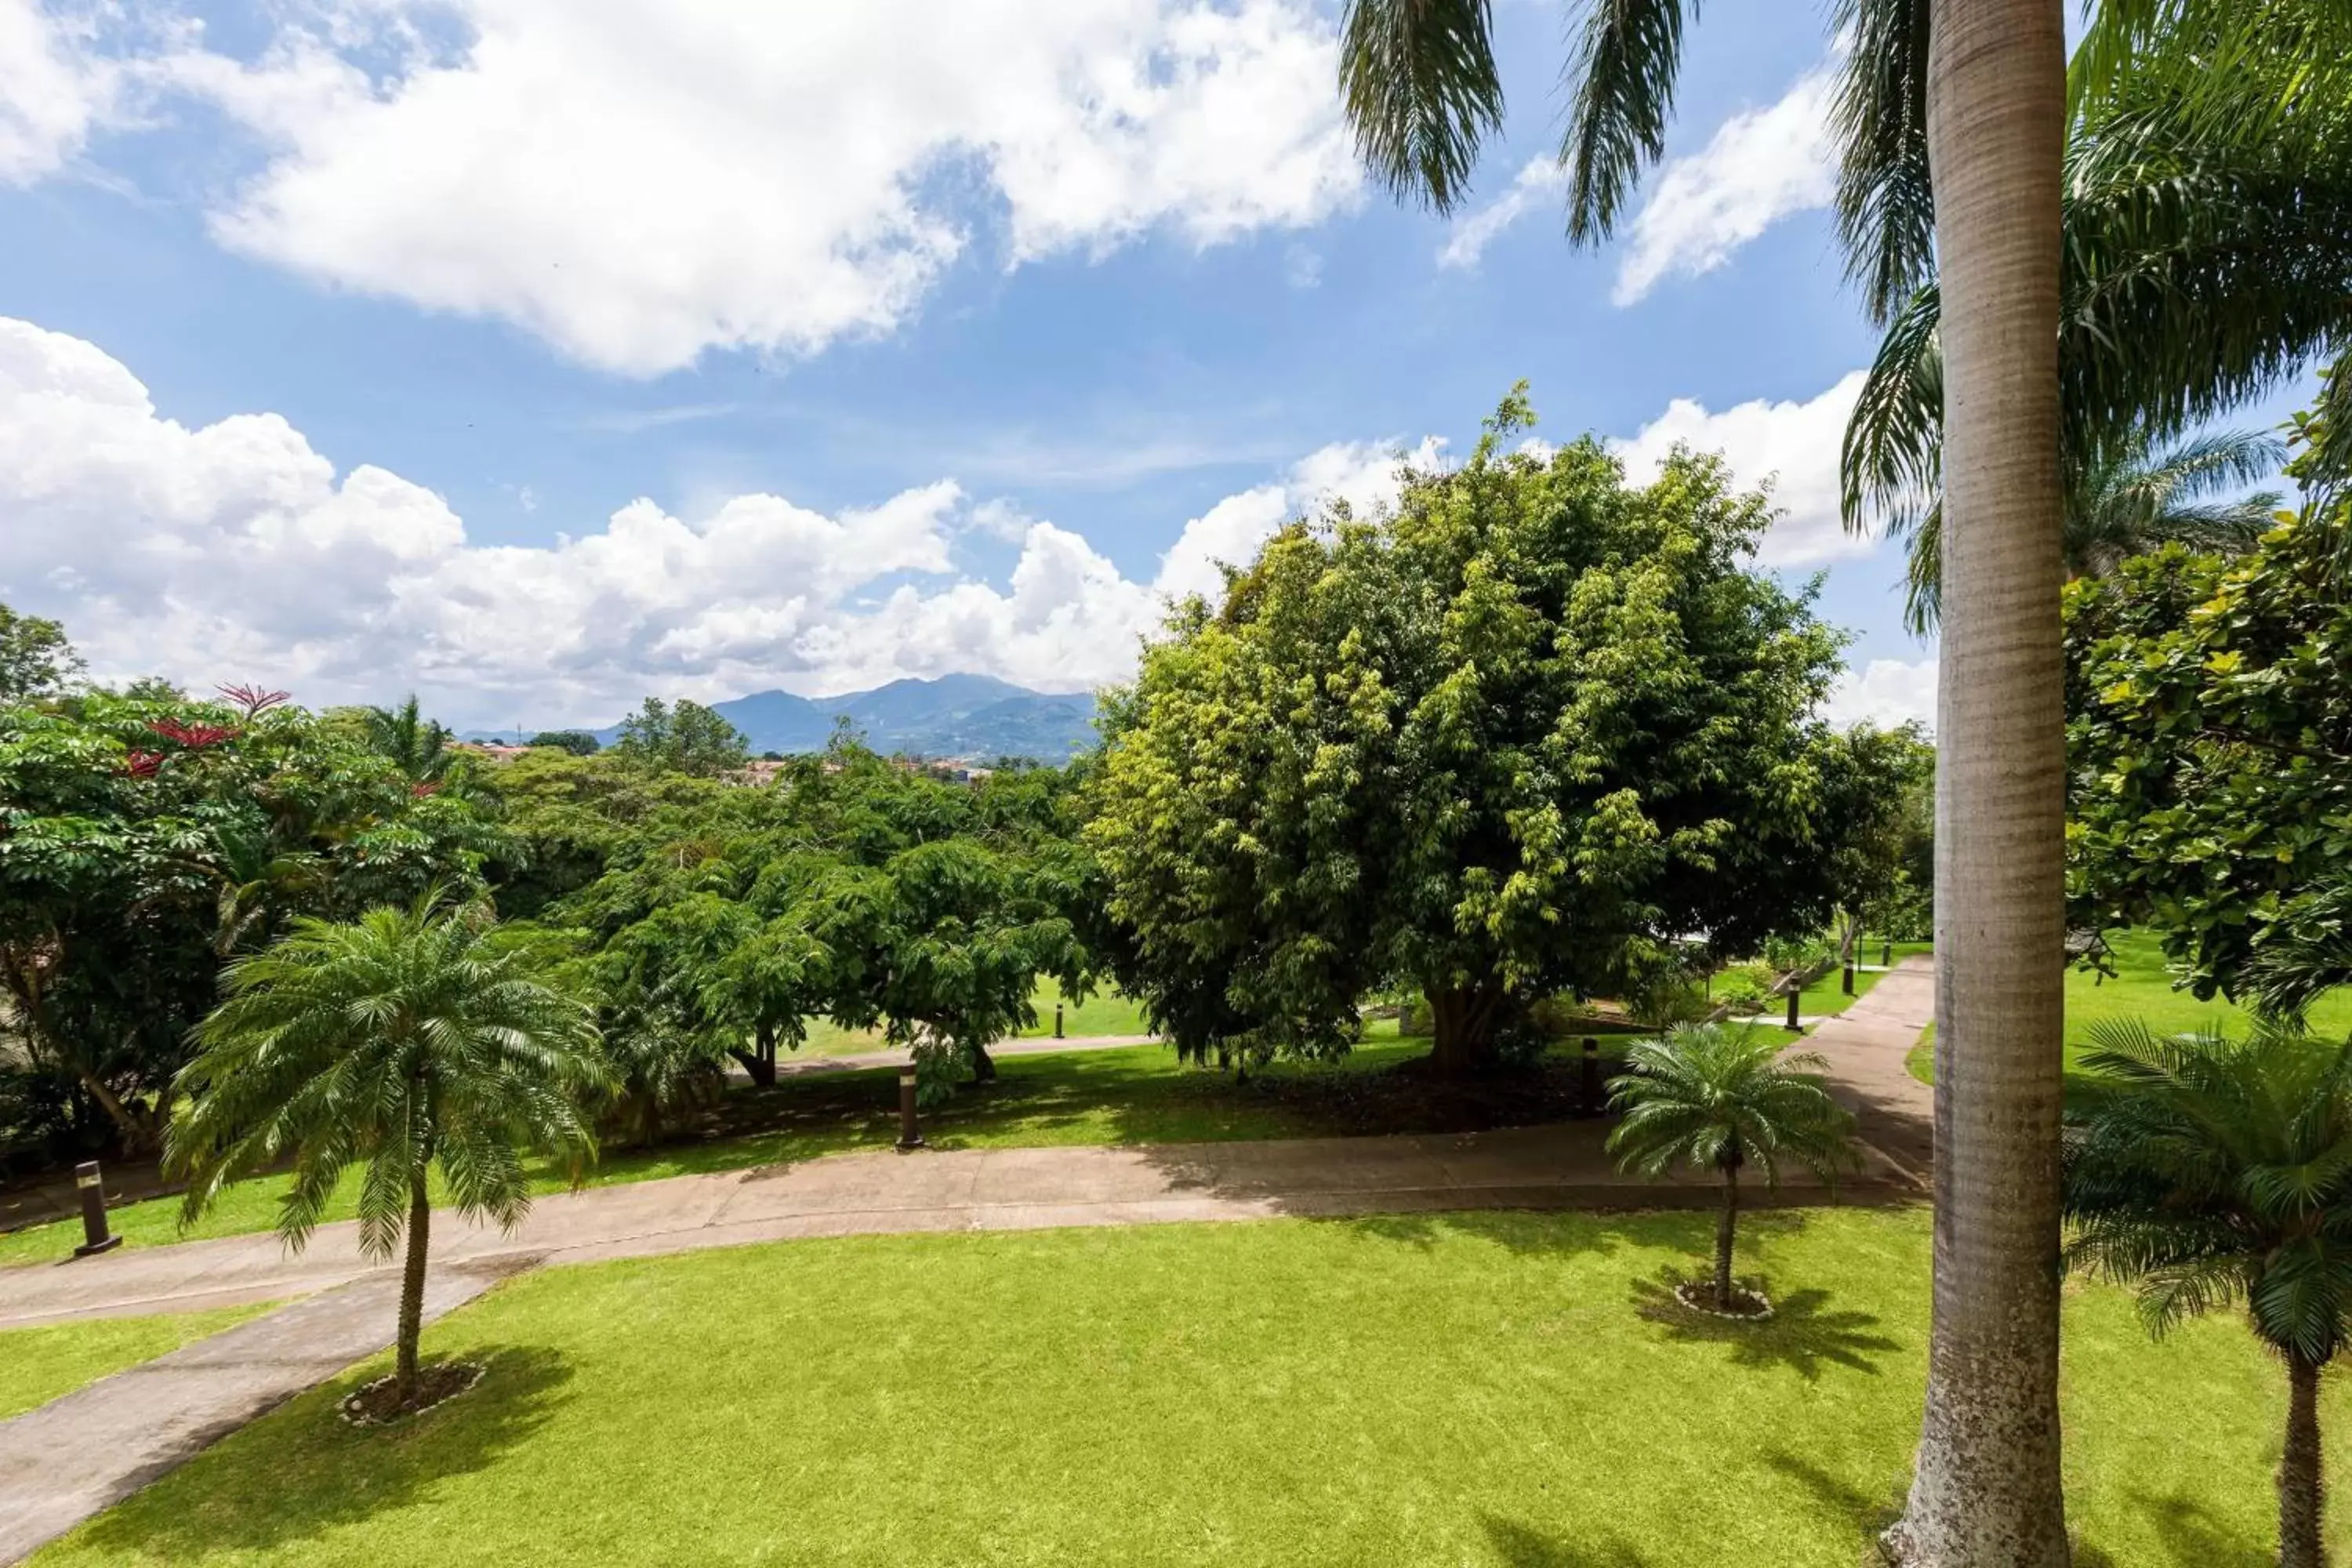 Photo of the whole room, Garden in Costa Rica Marriott Hotel Hacienda Belen